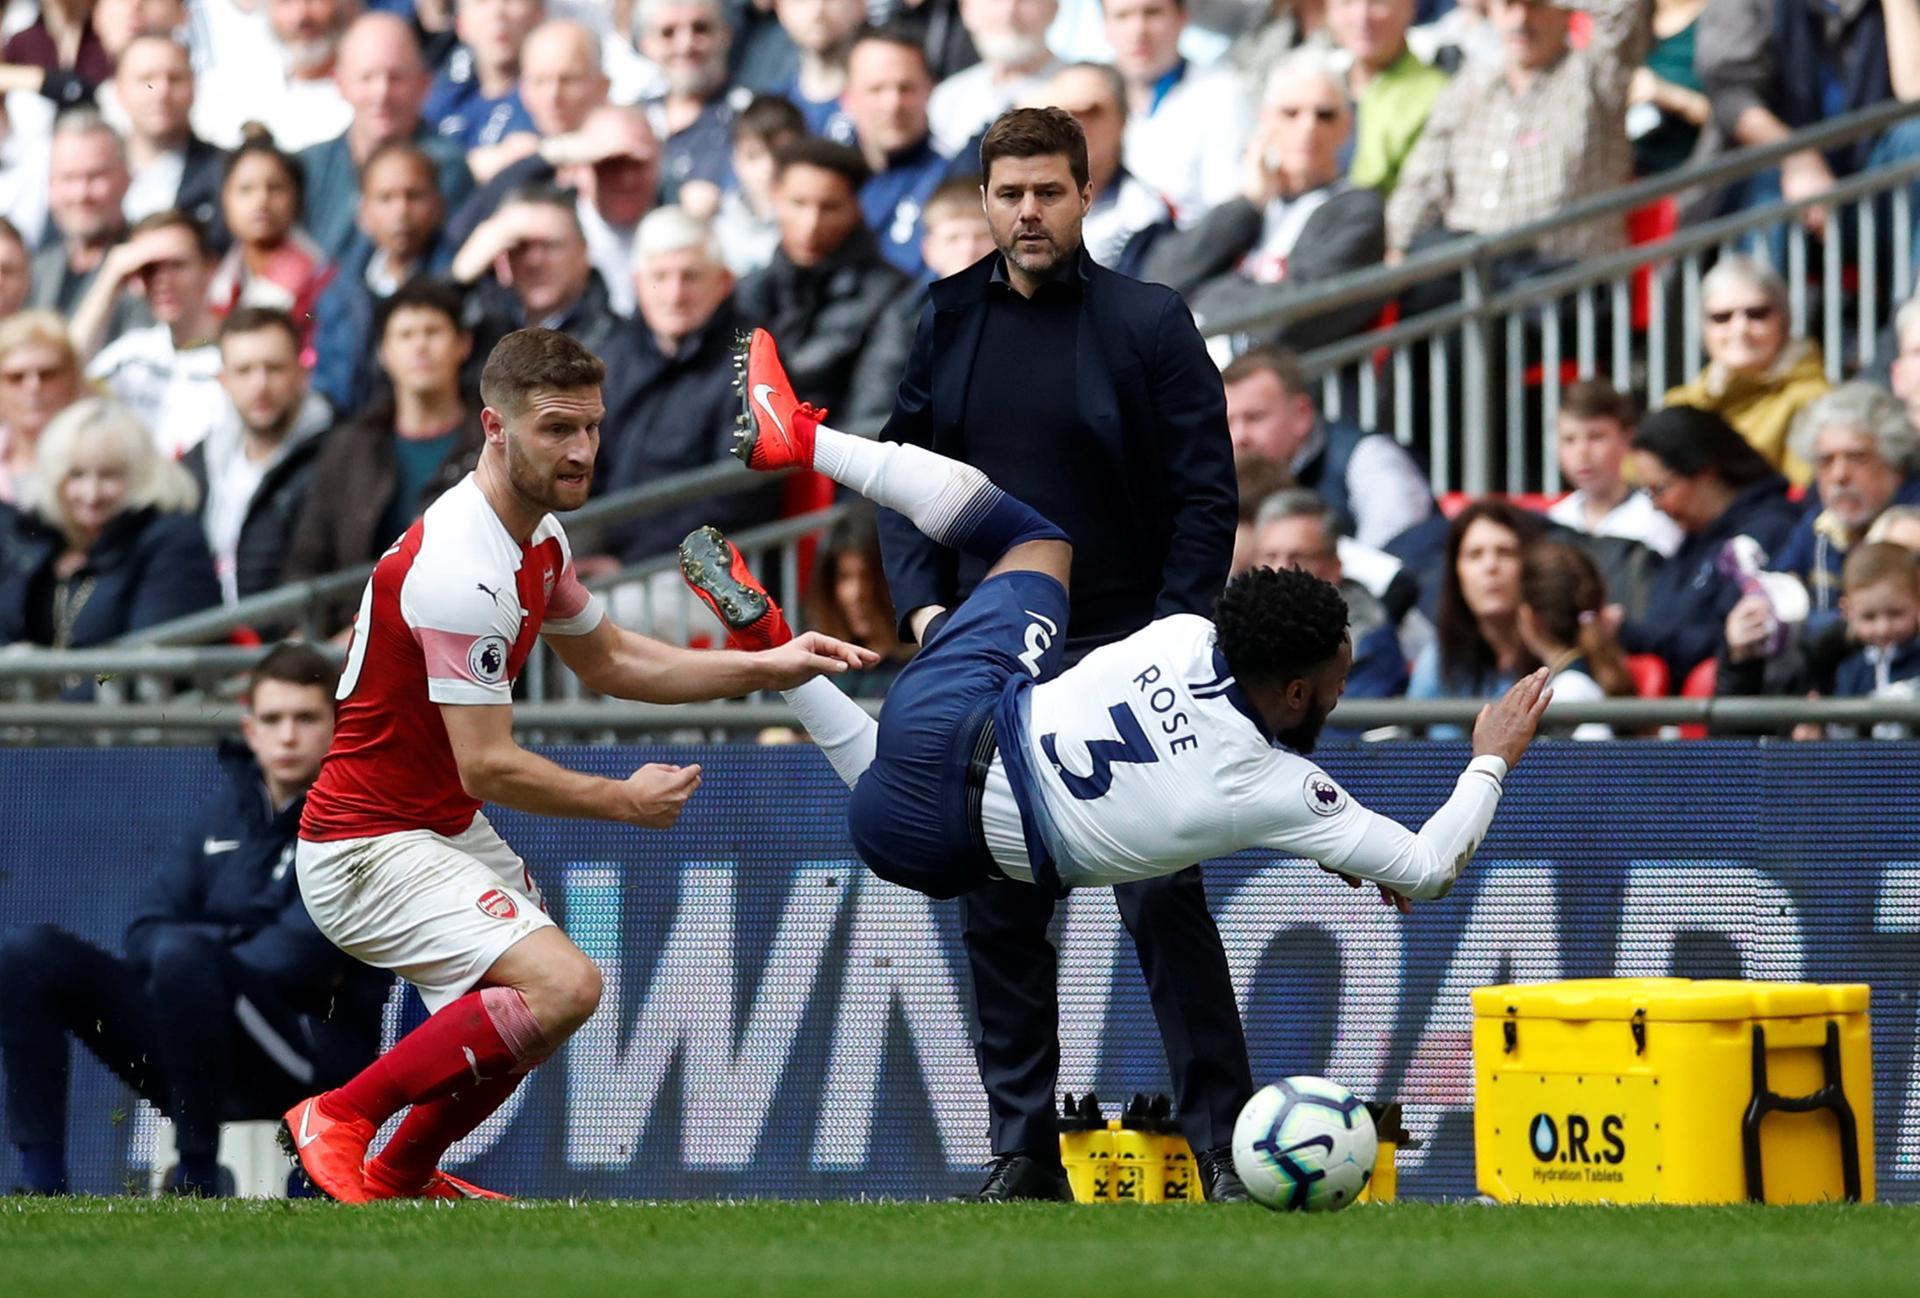 Hugo Lloris Tottenham hero for dramatic penalty save as Tottenham hold  Arsenal - ESPN